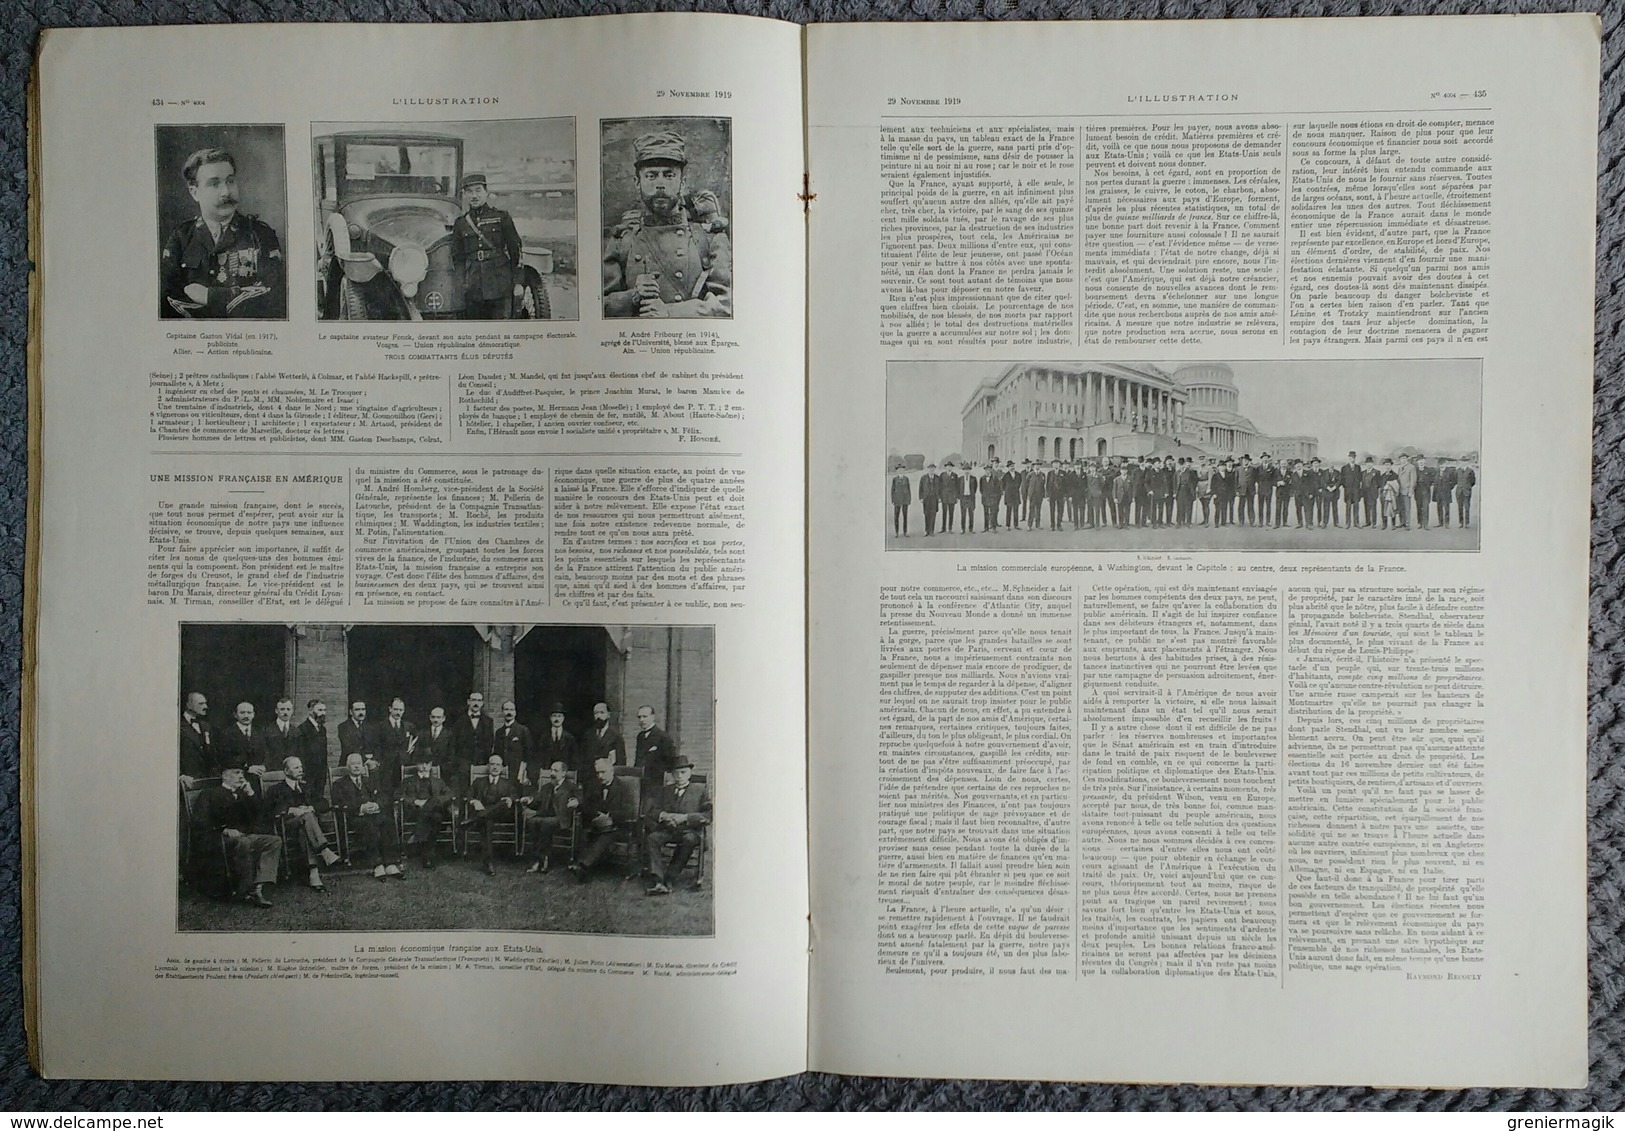 L'Illustration 4004 29 novembre 1919 Résultats des élections/Université de Strasbourg/Hindenburg et Ludendorff/Egypte